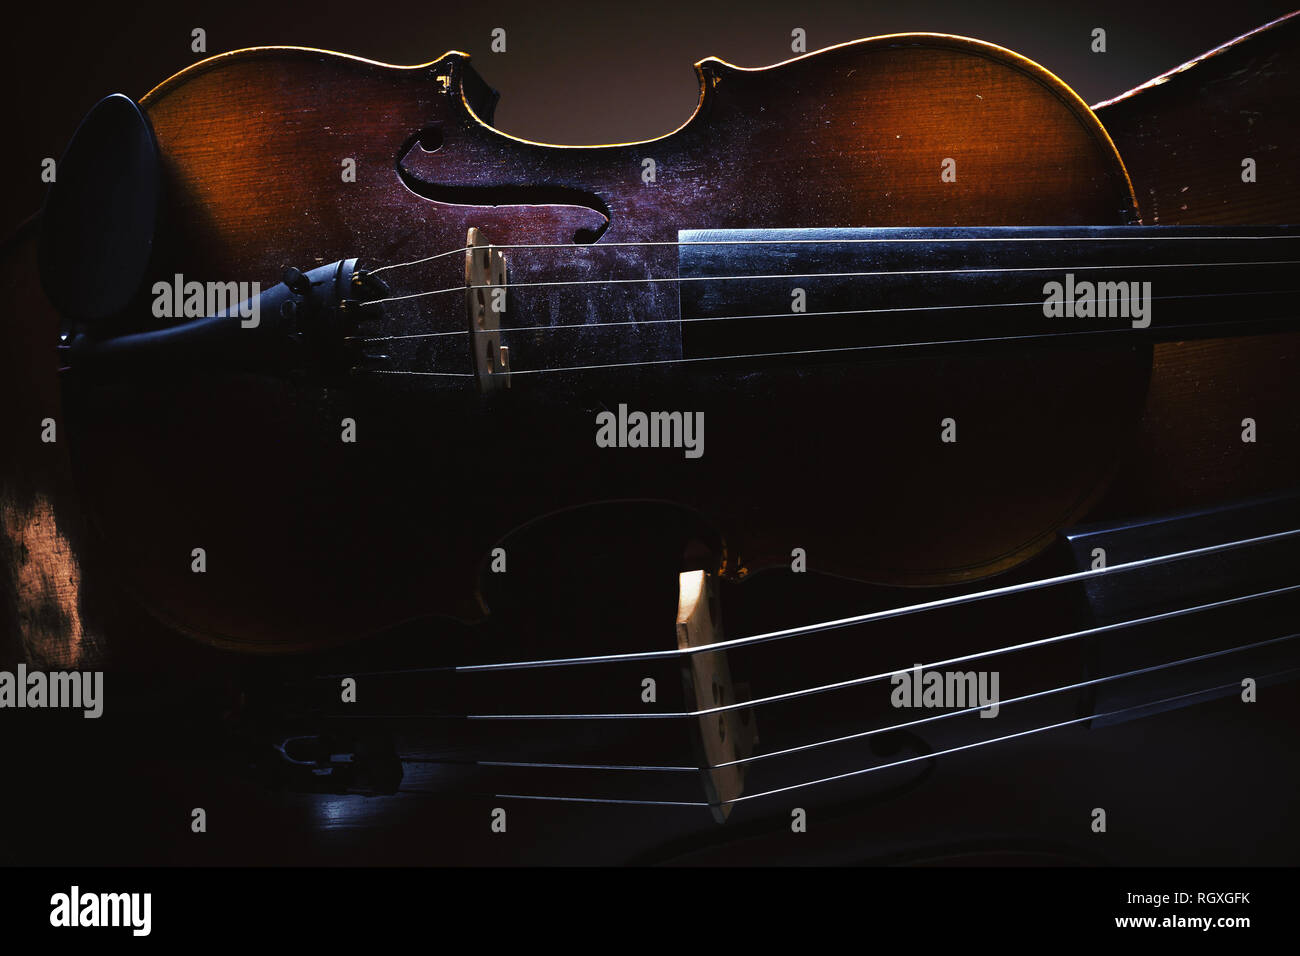 Détails de l'ancien violon et violoncelle, accentué de formes et de textures. Banque D'Images